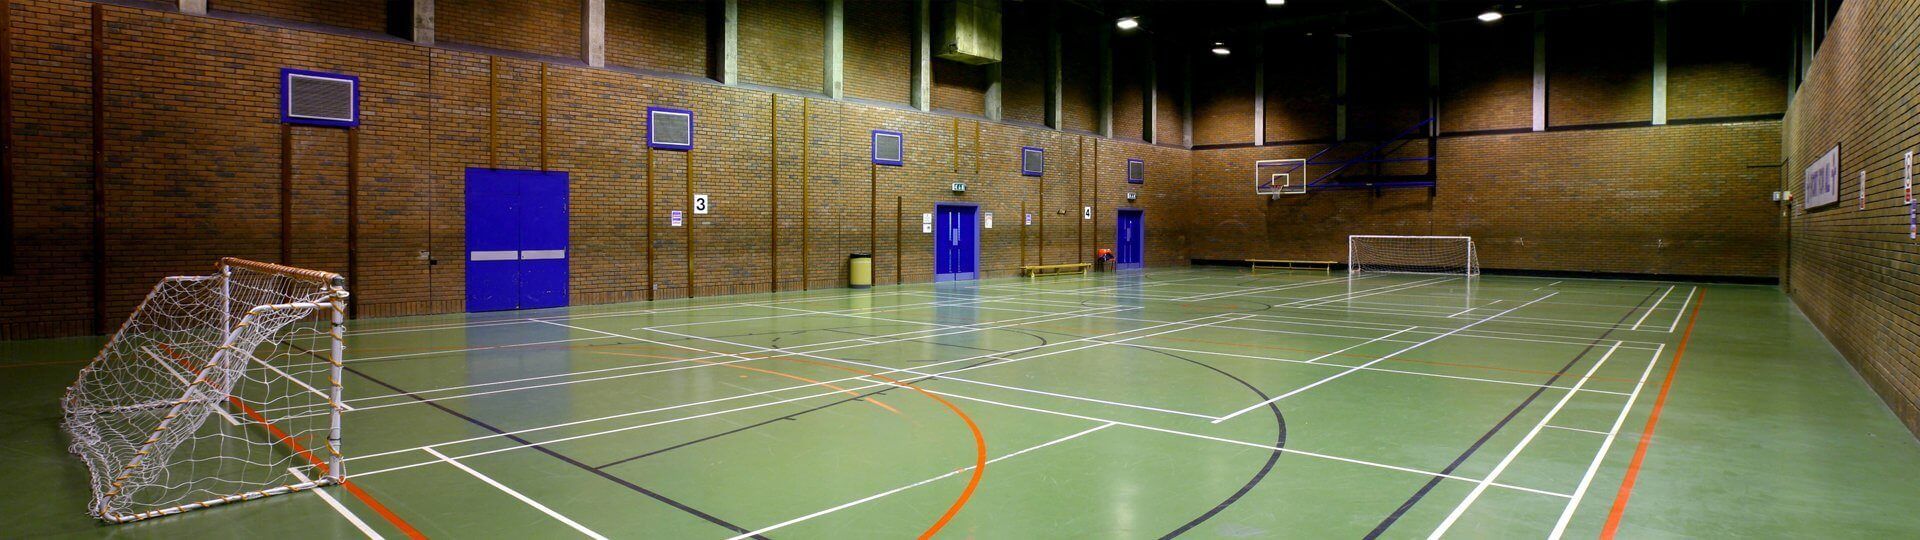 Indoor court marking image